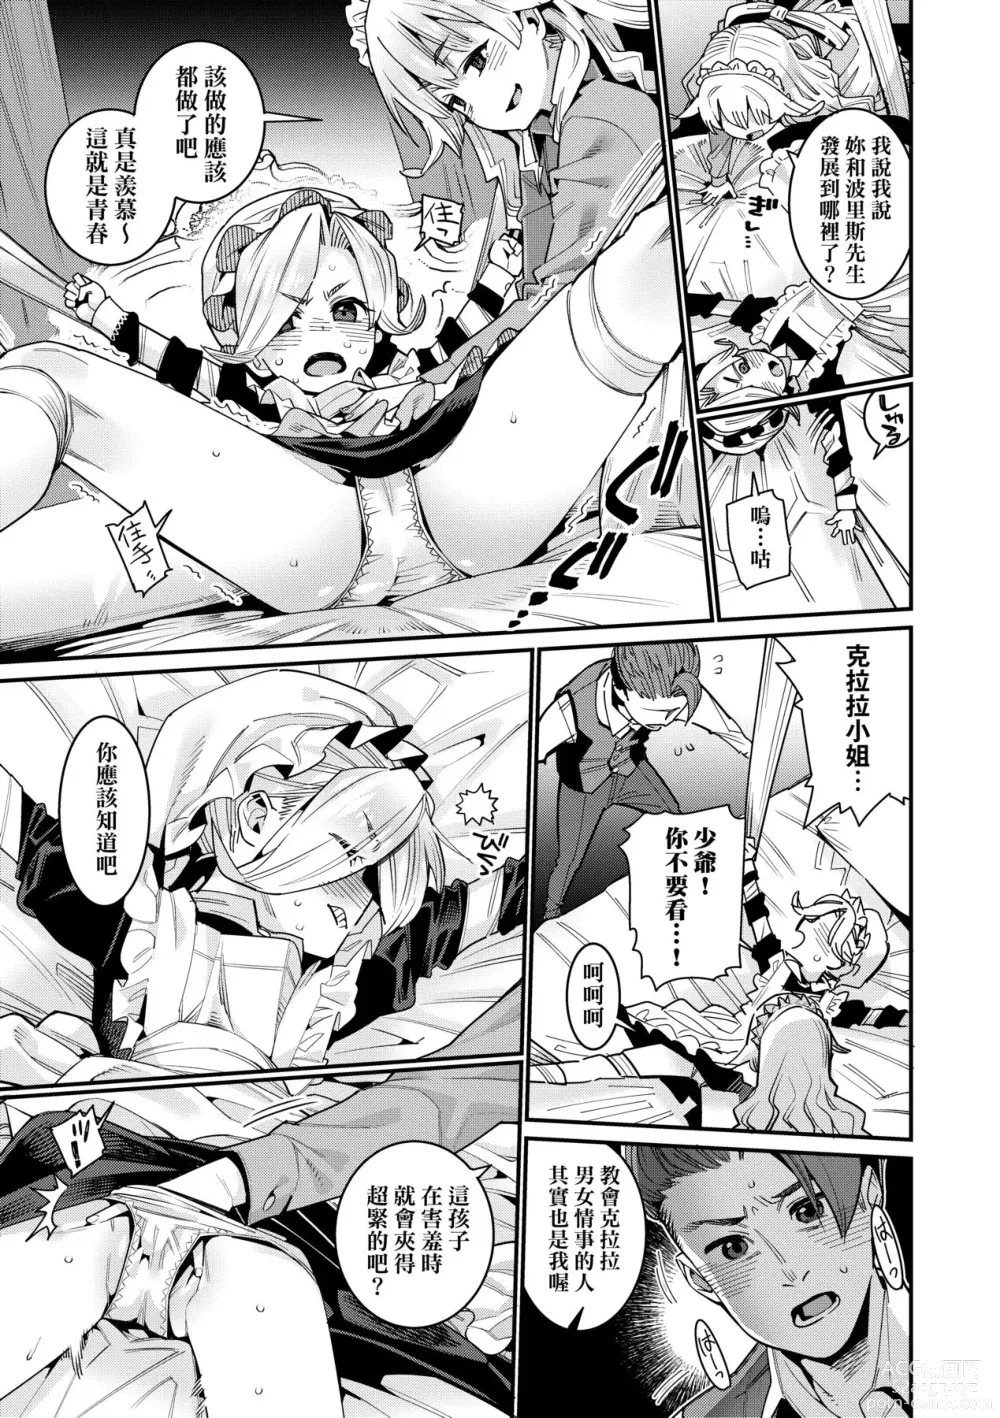 Page 32 of manga Itoshiki Wagaya (decensored)